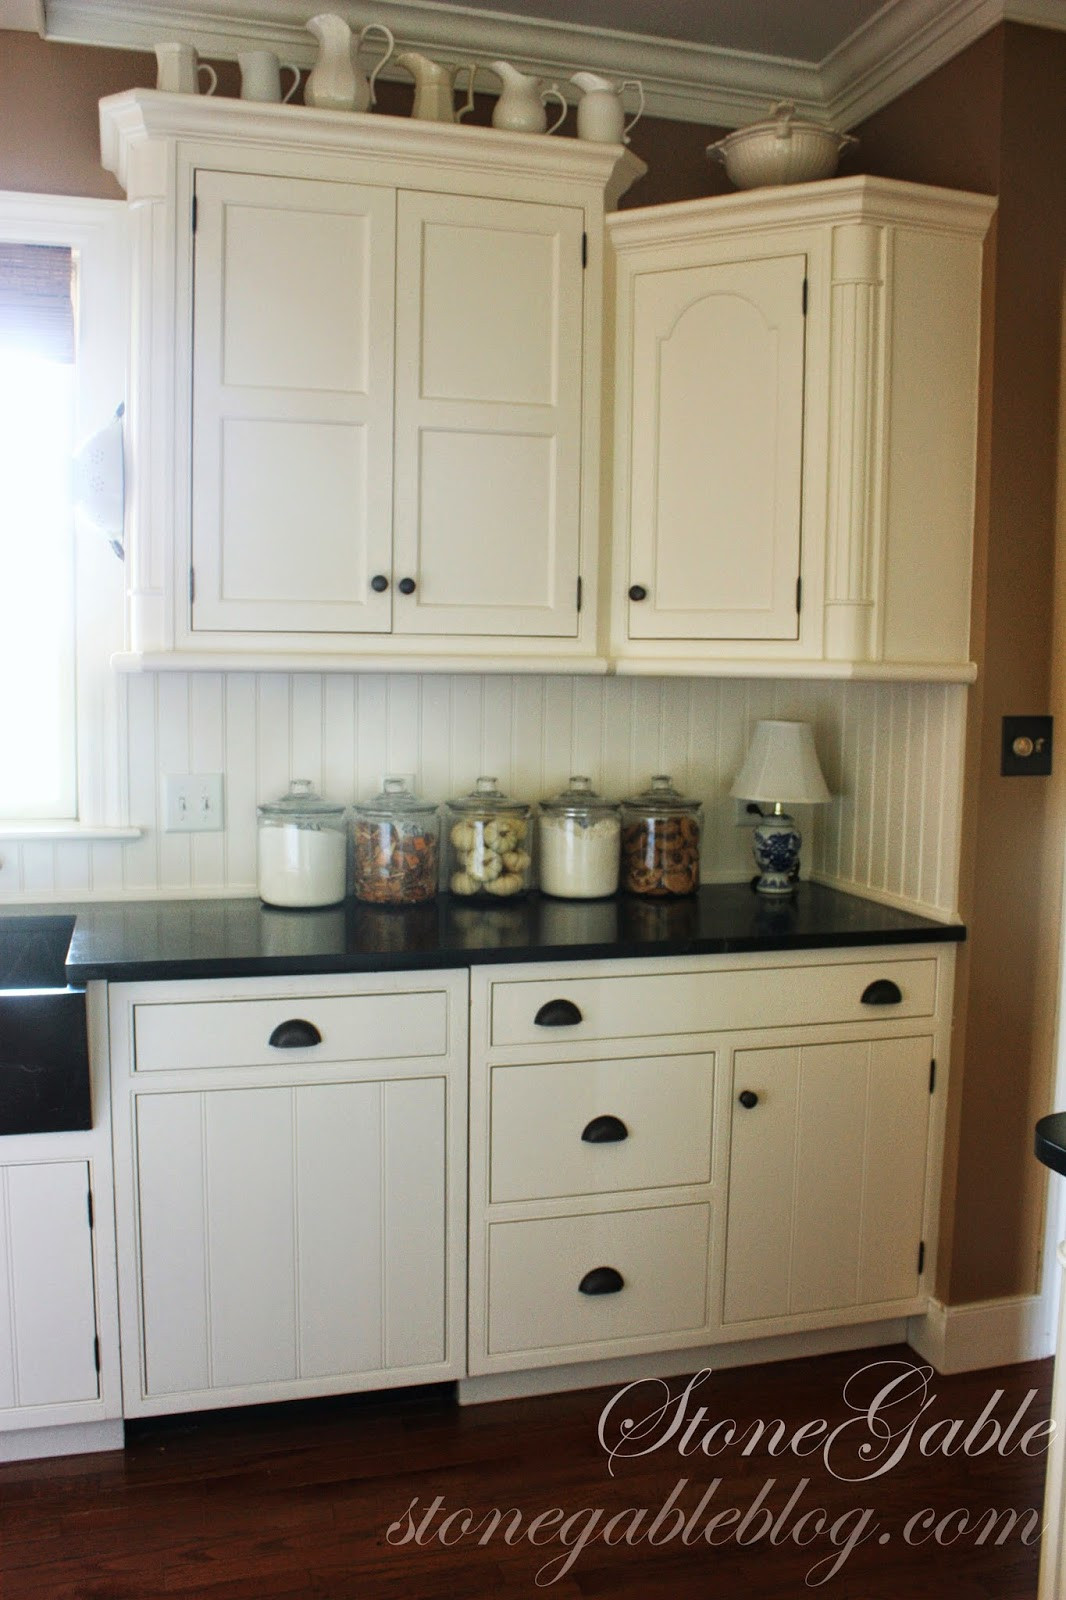 White Farmhouse Kitchen Cabinets
 10 ELEMENTS OF A FARMHOUSE KITCHEN StoneGable